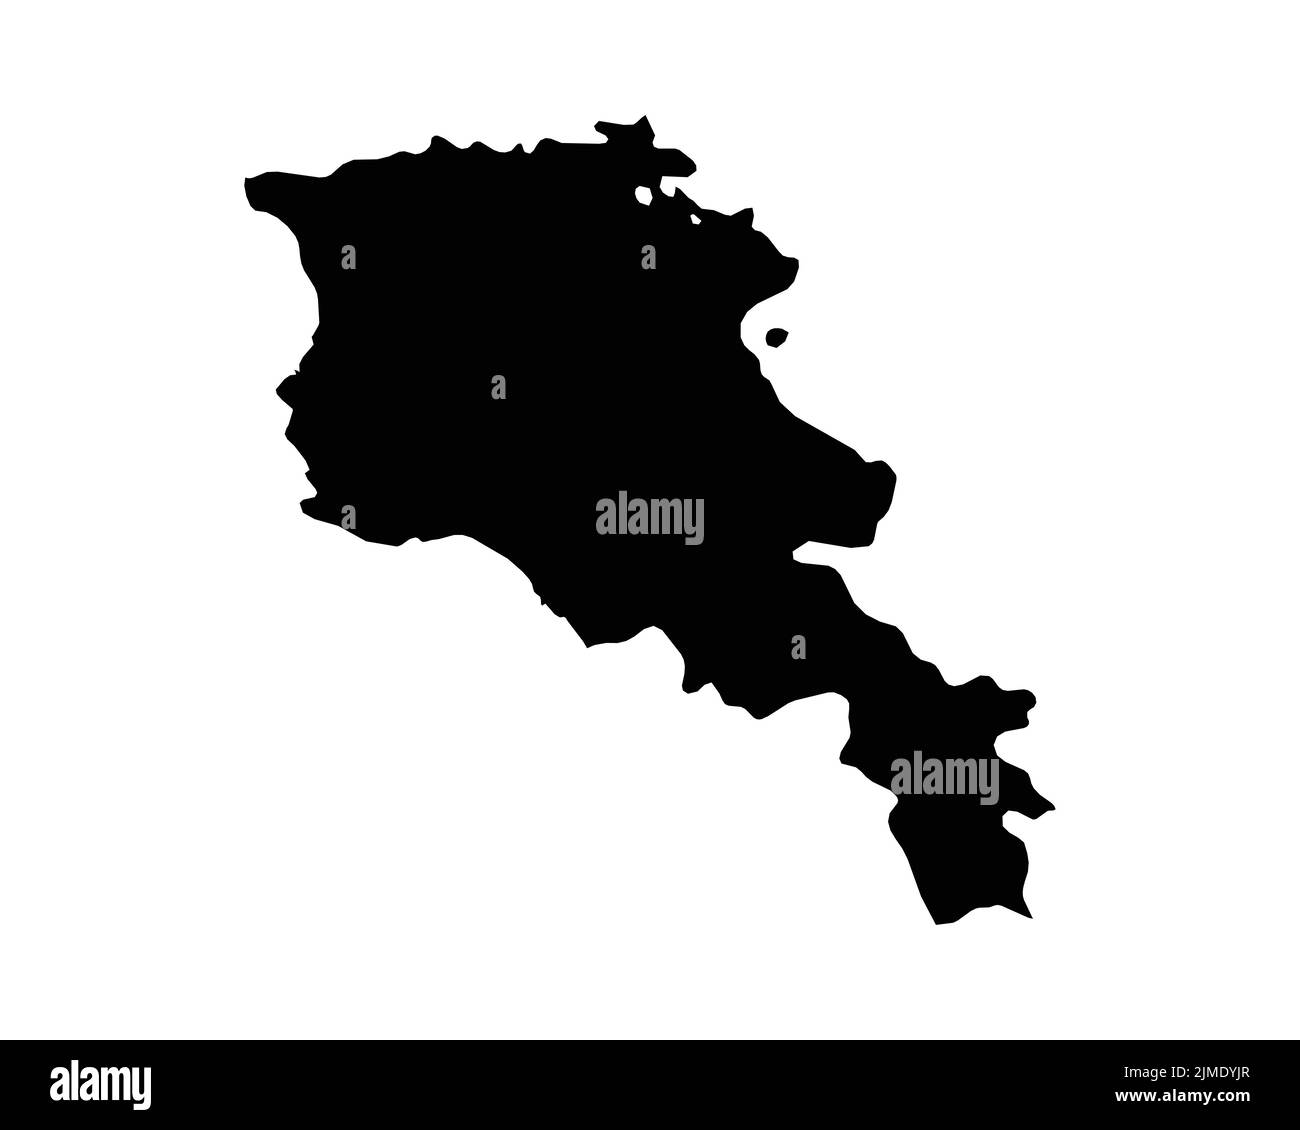 Mappa Armenia. Mappa del Paese Armeno. Bianco e nero contorno nazionale contorno contorno contorno contorno contorno contorno contorno forma Geografia territorio EPS disegno vettoriale clipart Illustrazione Vettoriale